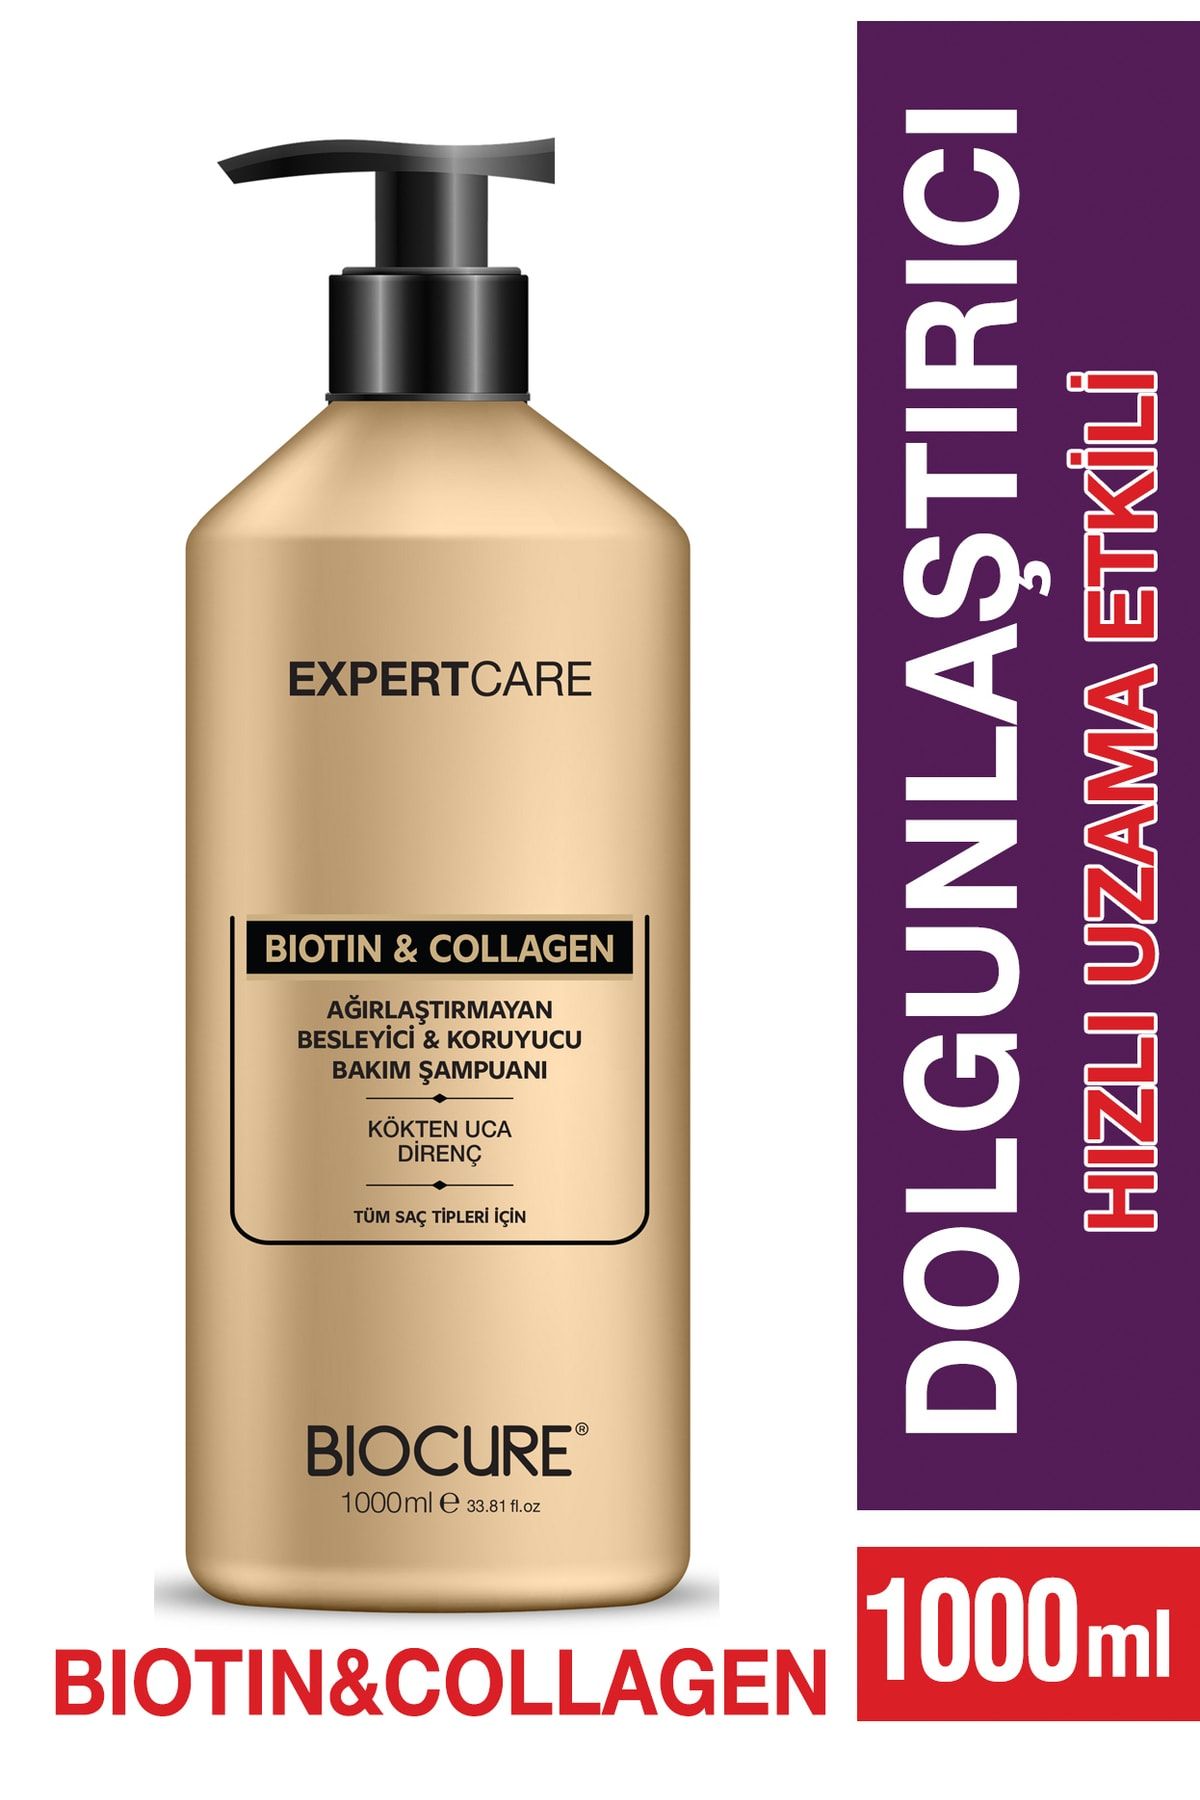 Biocure Biotin & Collagen Saç Bakım Şampuanı - Ağirlaştirmayan Besleyici & Koruyucu Bakim Şampuanı 1 Litre